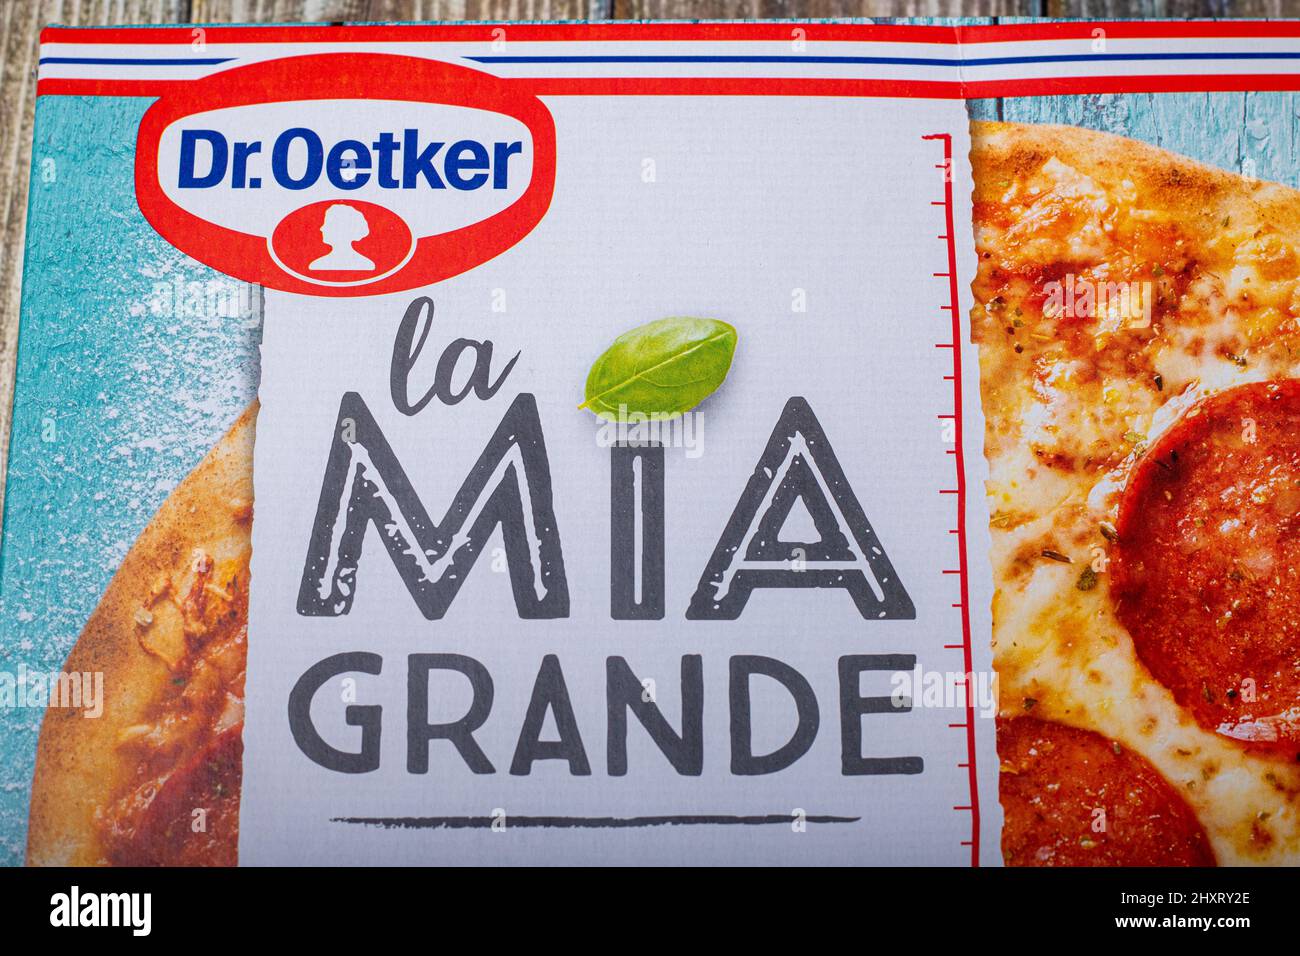 Neckargemuend, Germania: 05 marzo 2022: Confezionamento della pizza congelata del marchio 'la mia grande' del produttore alimentare tedesco 'Dr. Oetker' Foto Stock